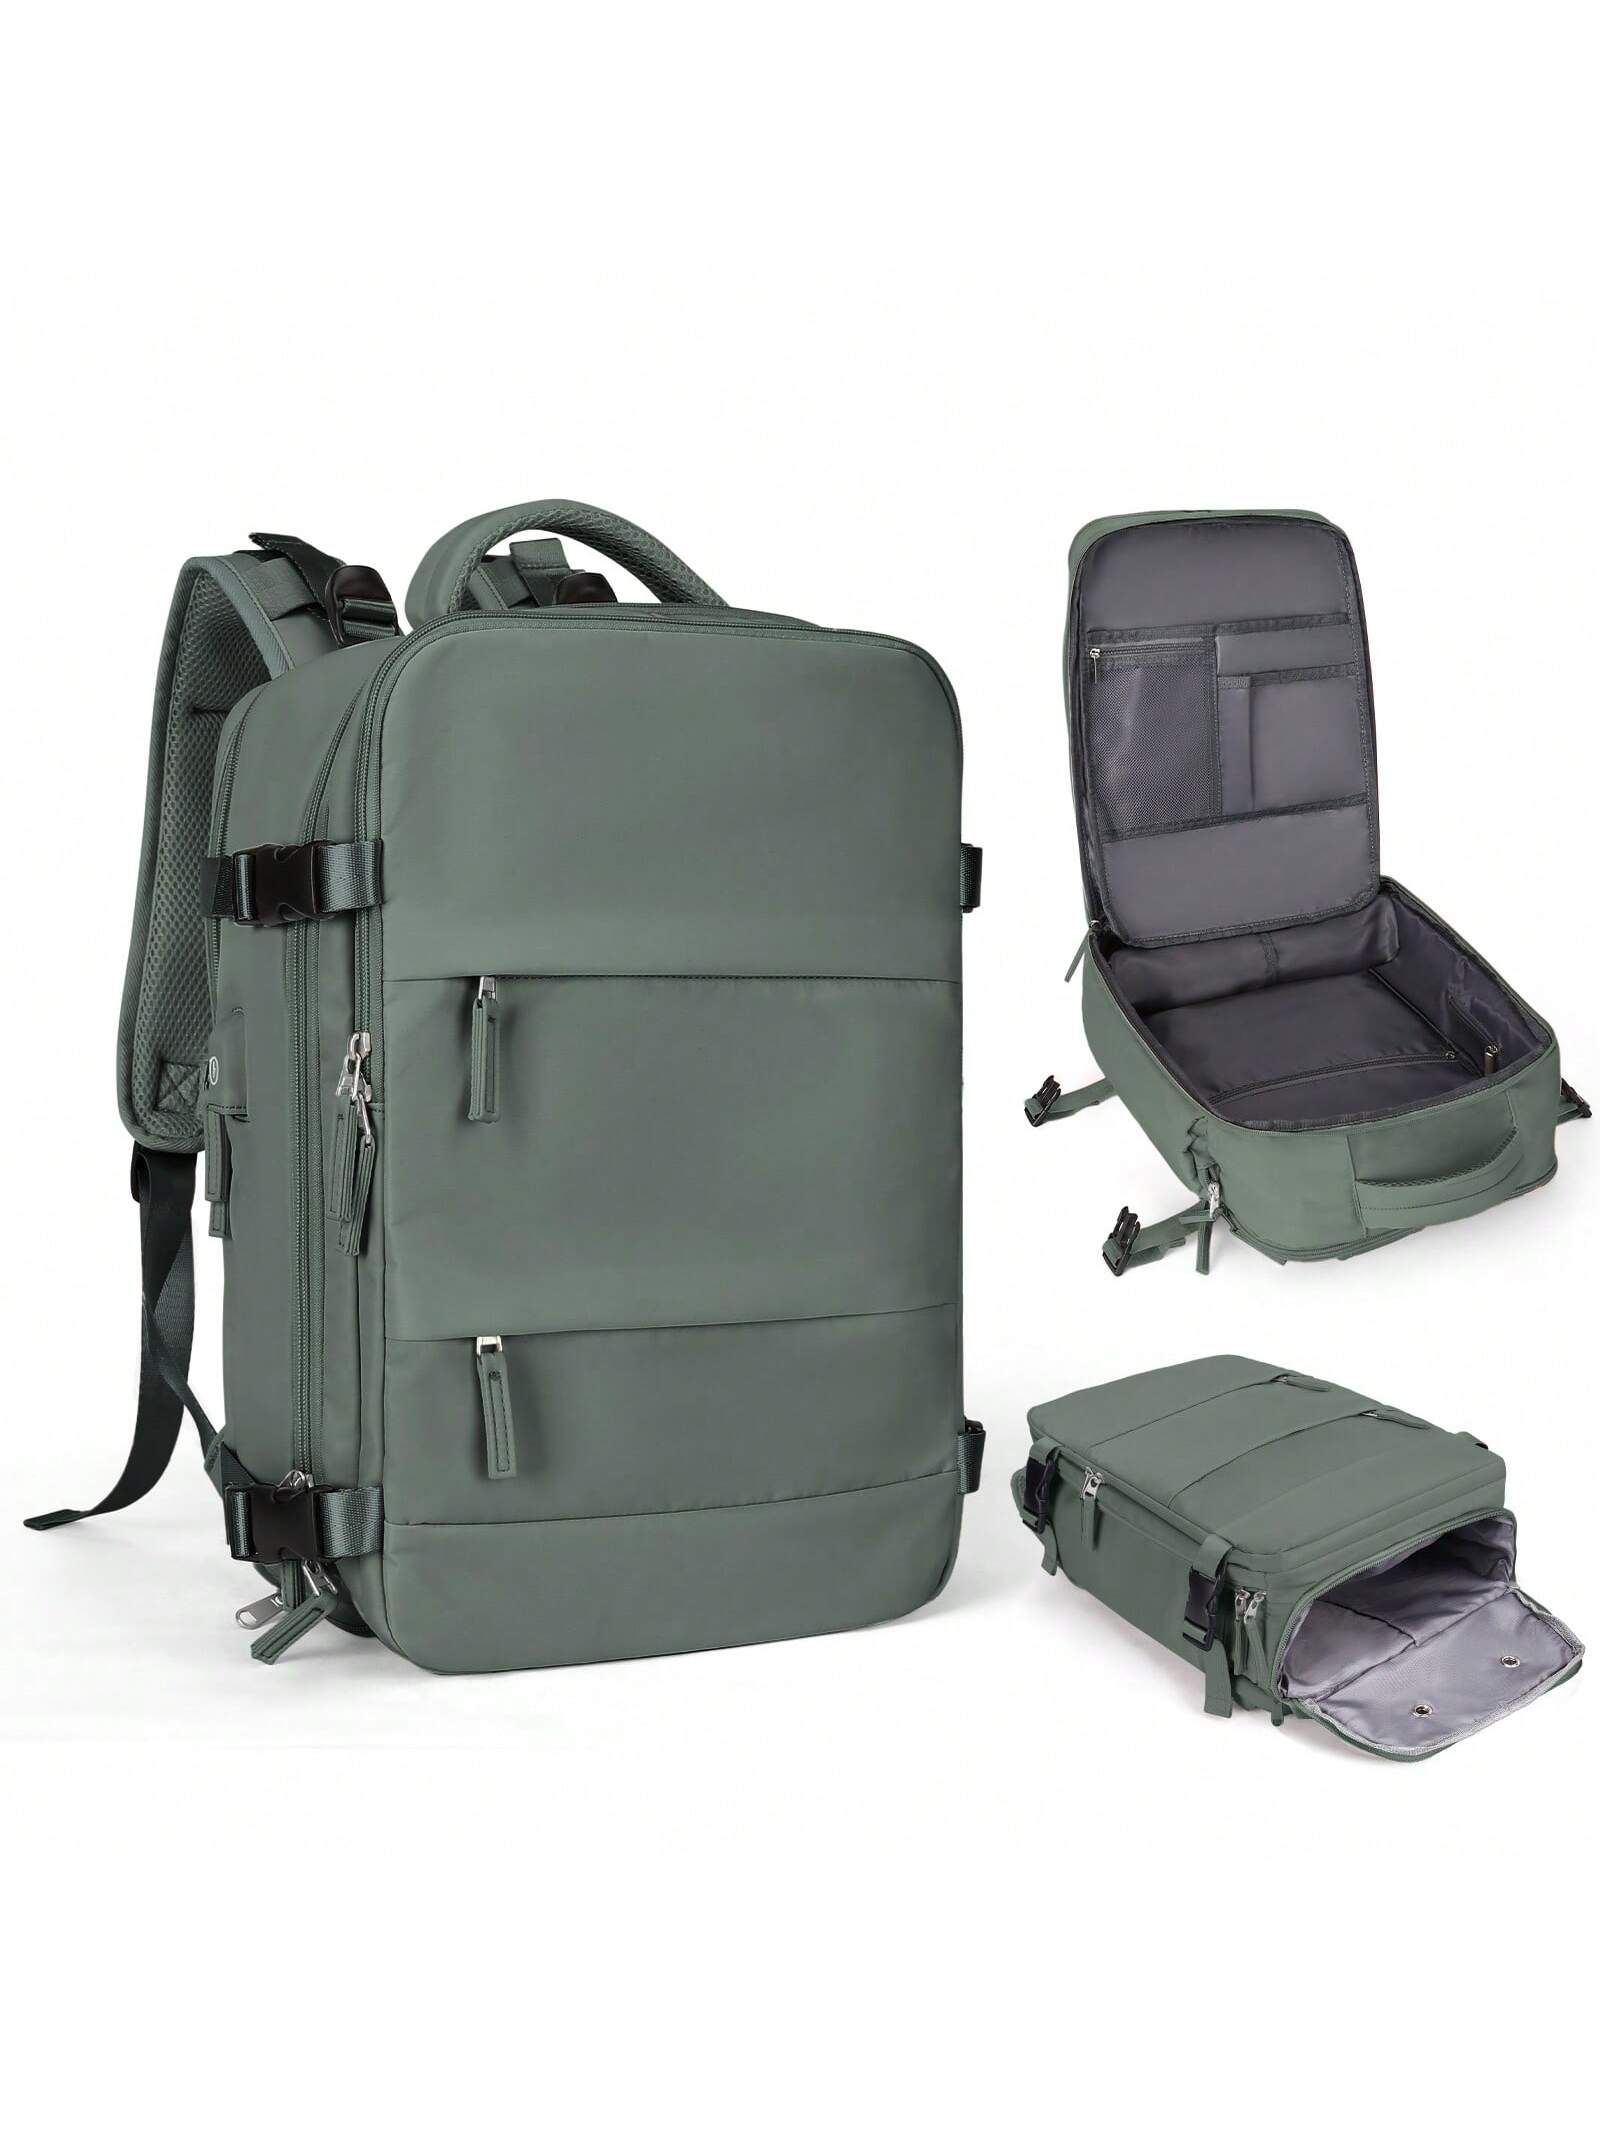 Женский дорожный рюкзак с USB-портом для зарядки, армейский зеленый женский холщовый рюкзак на плечо с микки маусом студенческий школьный рюкзак на молнии дорожный мини рюкзак 2019